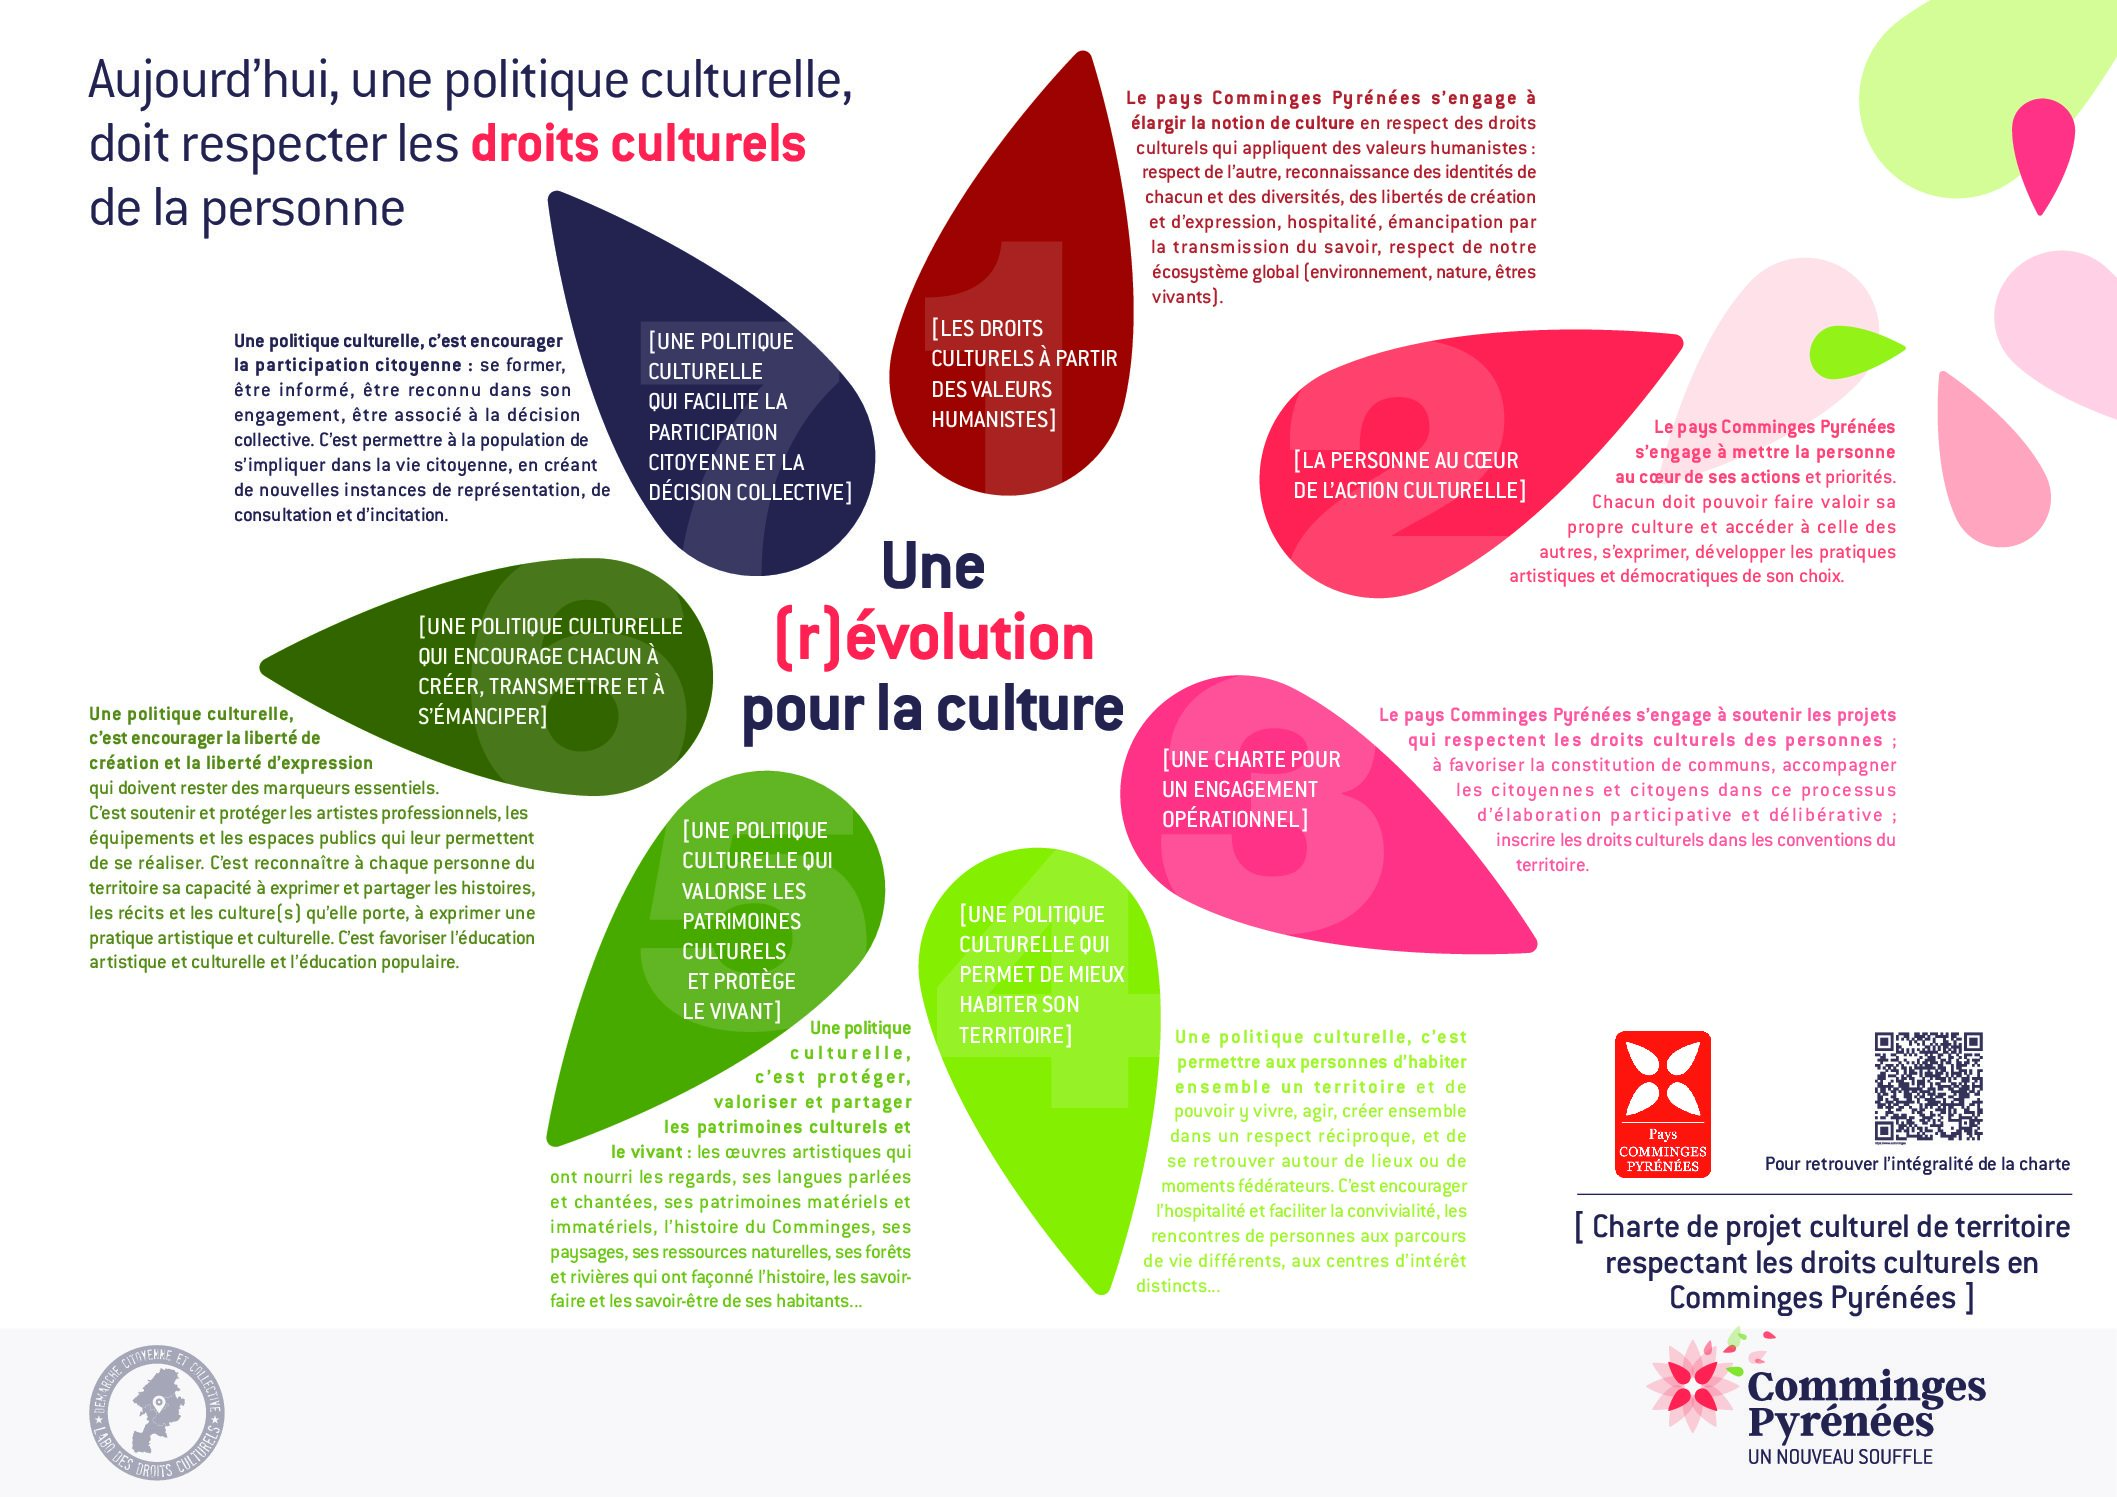 La Charte pour les droits culturels en Comminges Pyrénées est lancée !